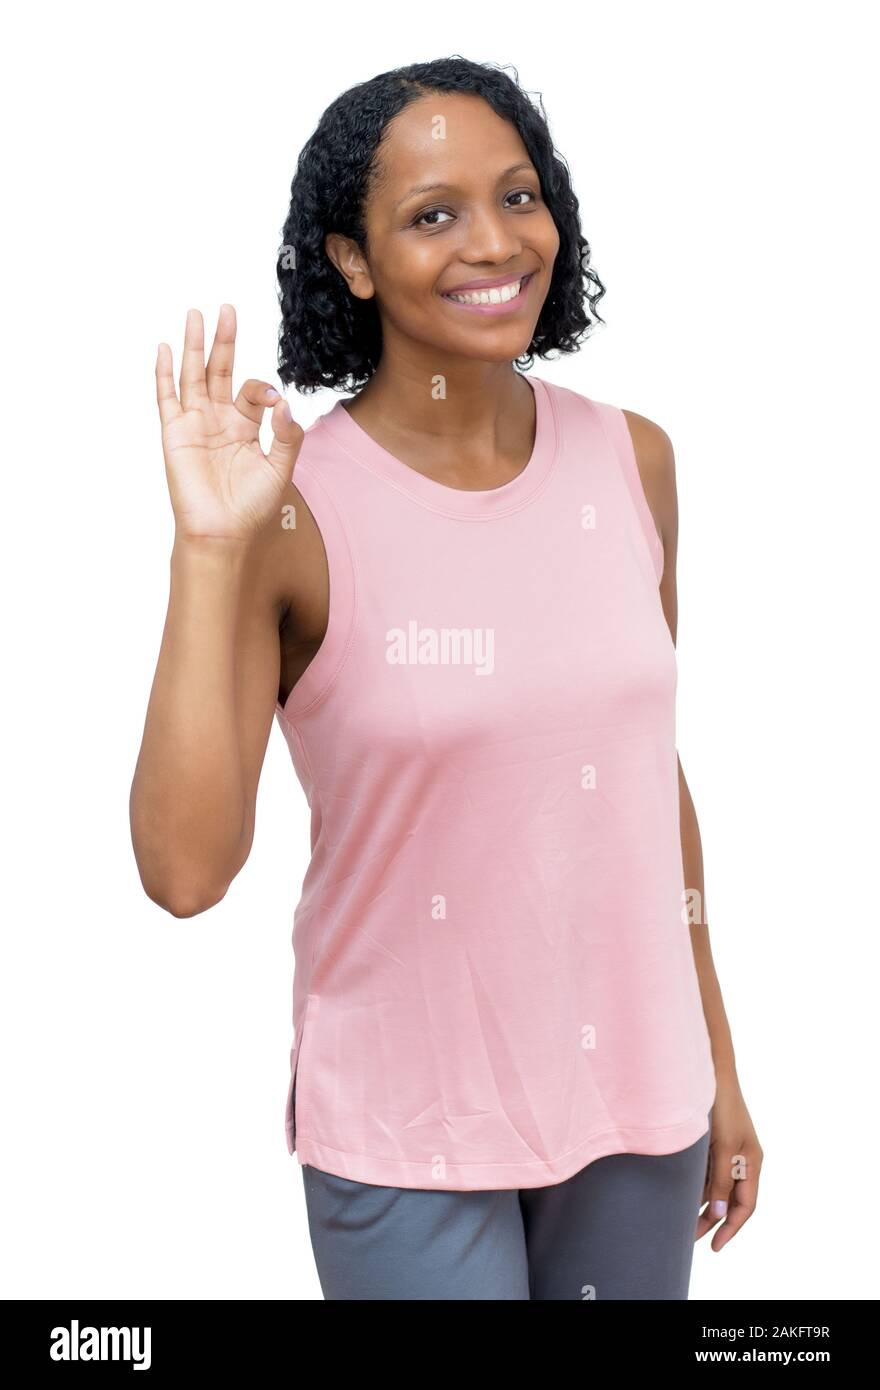 Sportivo americano africano donna matura isolata su sfondo bianco per tagliare Foto Stock